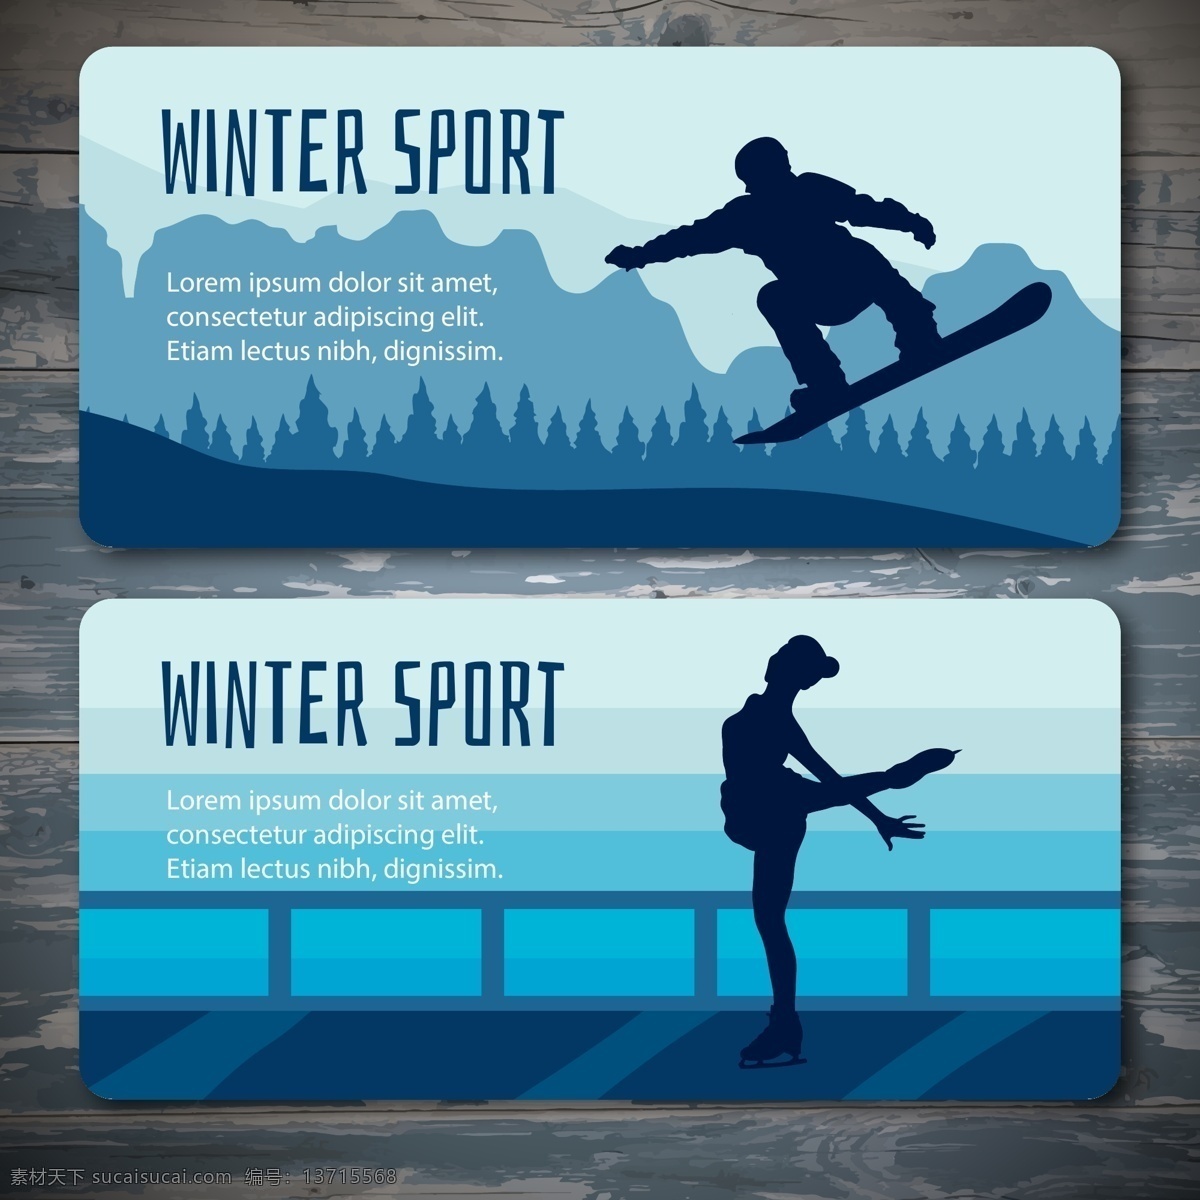 滑雪运动 运动 体育运动 奥运会 比赛 运动海报 运动比赛海报 运动员 户外运动 室内运动 运动俱乐部 体育馆海报 卡通设计